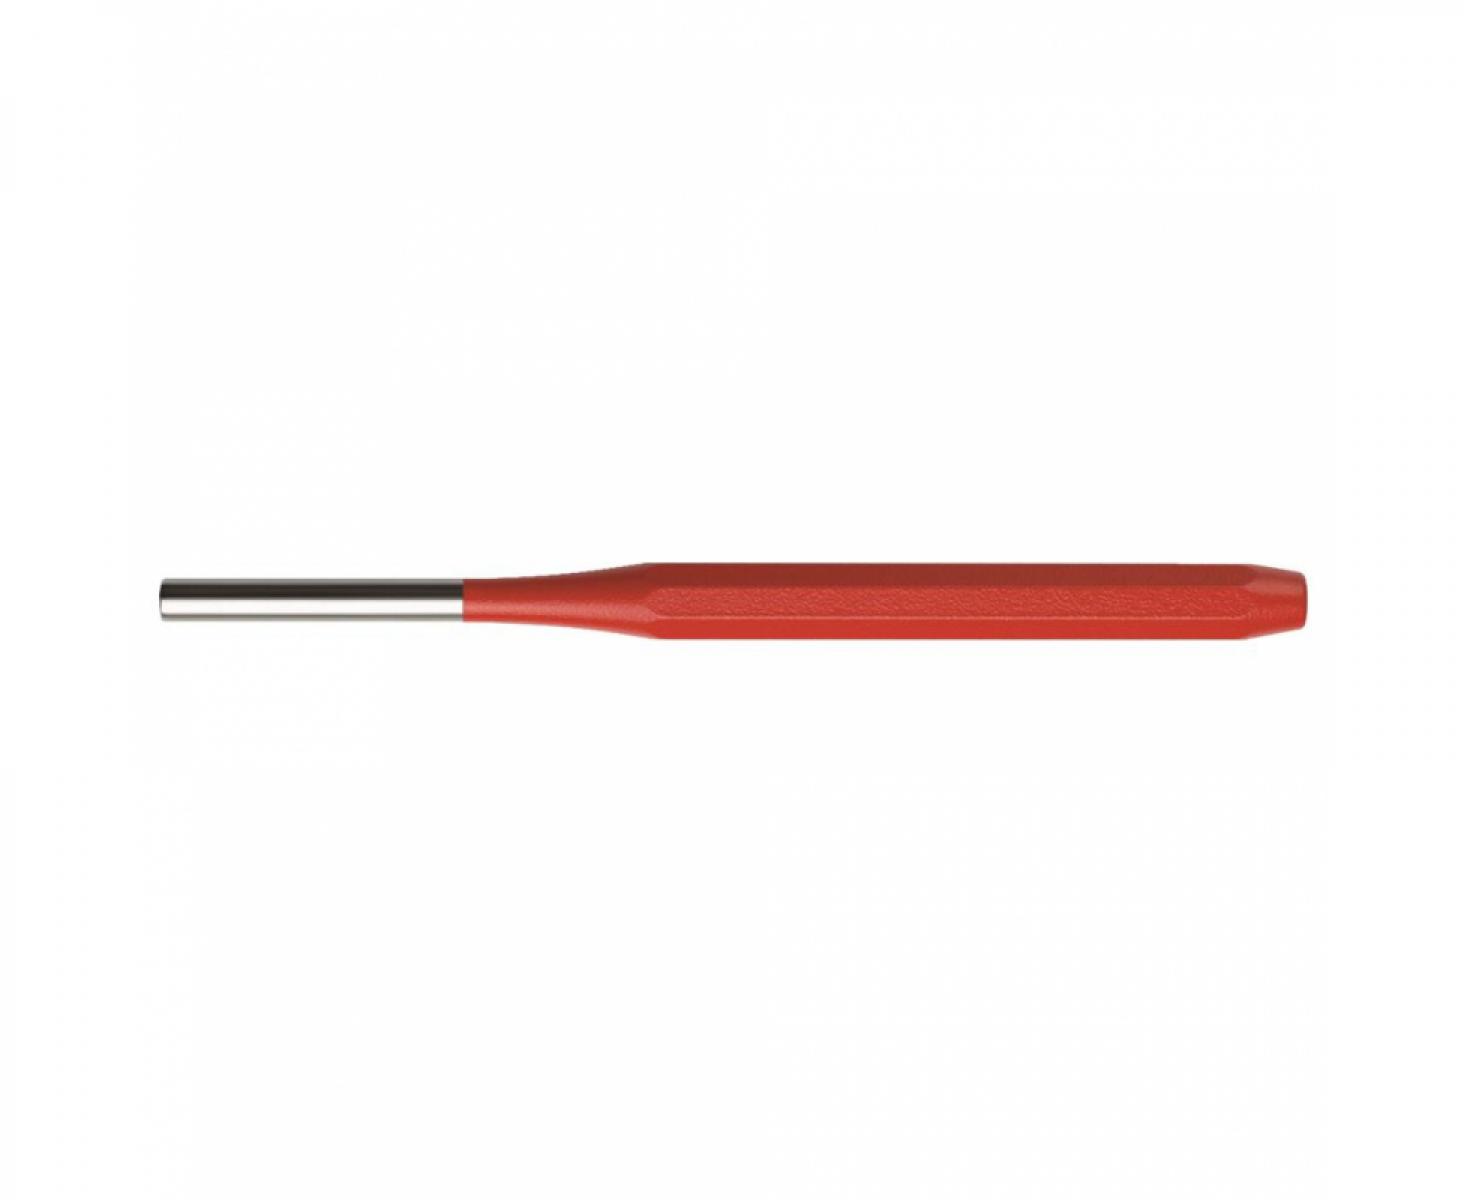 Пробойник восьмигранный цилиндрический PB Swiss Tools PB 755.6 RE красный